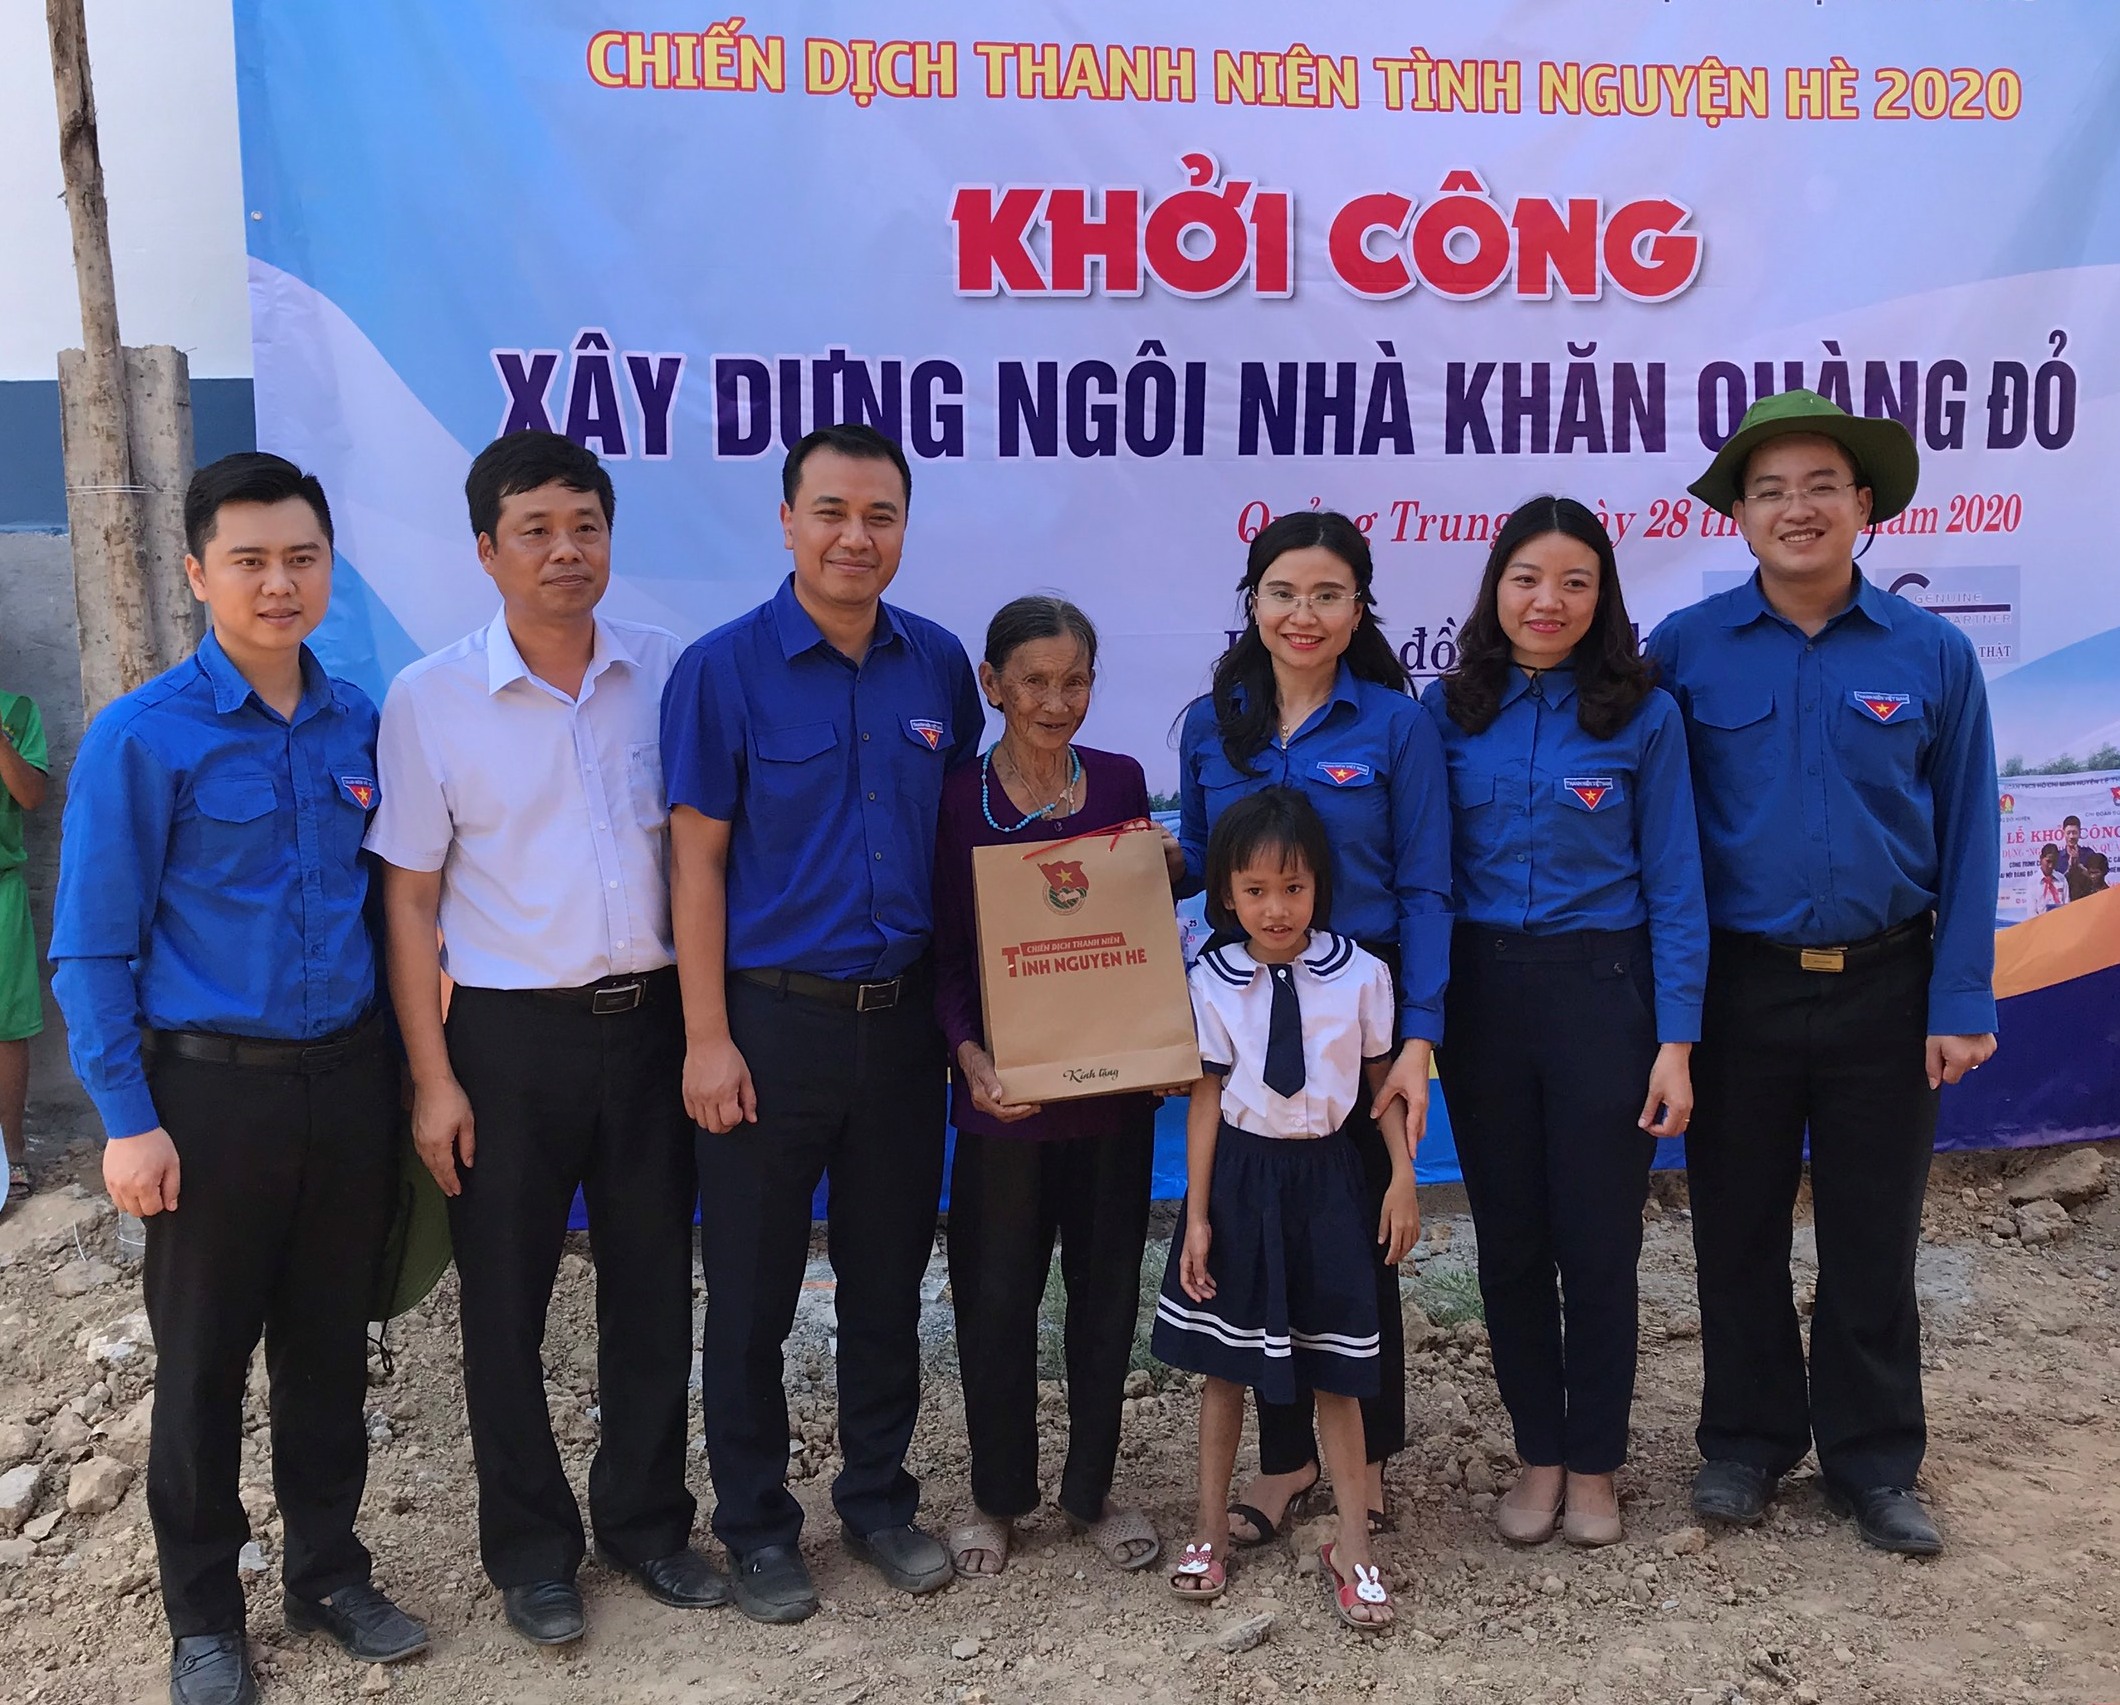  Anh Nguyễn Vĩnh Quý (ngoài cùng bên trái) trong chiến dịch tình nguyện hè 2020.